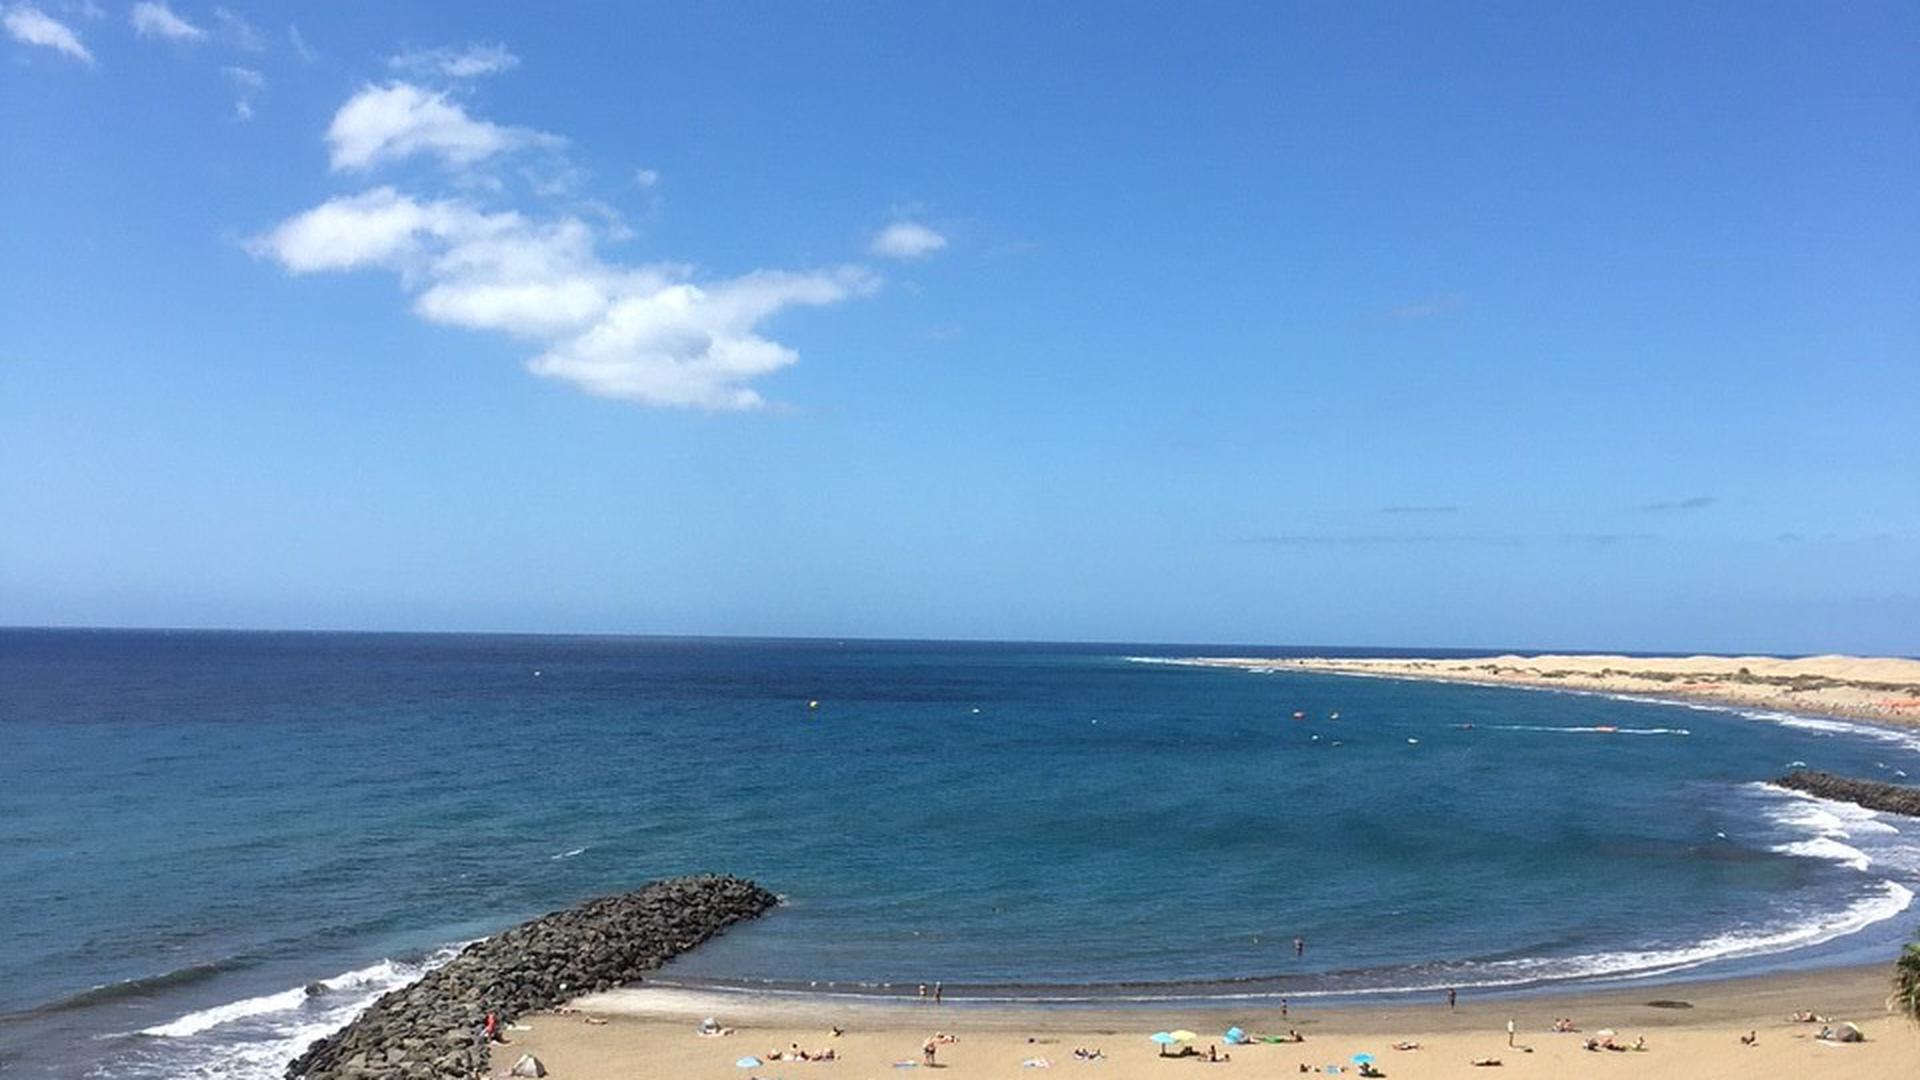 Blick auf den Strand von Gran Canaria in Spanien von Monika Rübenacker aus Oberderdingen.
